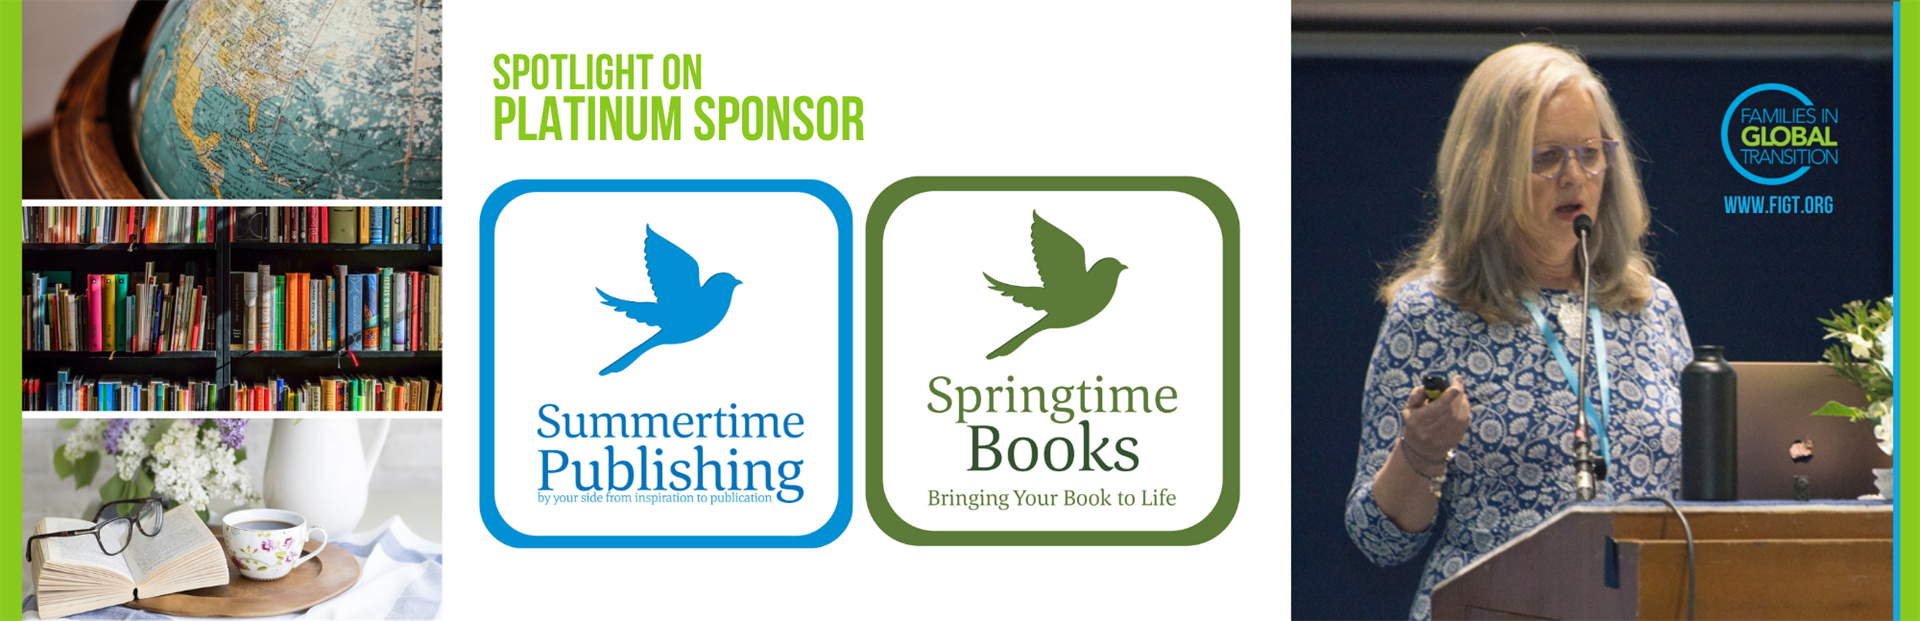 FIGT Platinum sponsor Summertime Publishing and Springtime Books